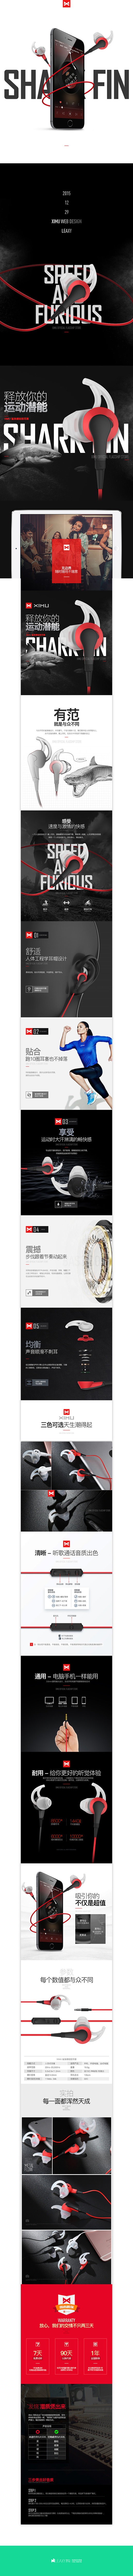 XIMU-鲨鱼鳍耳机产品介绍页面设计 b...